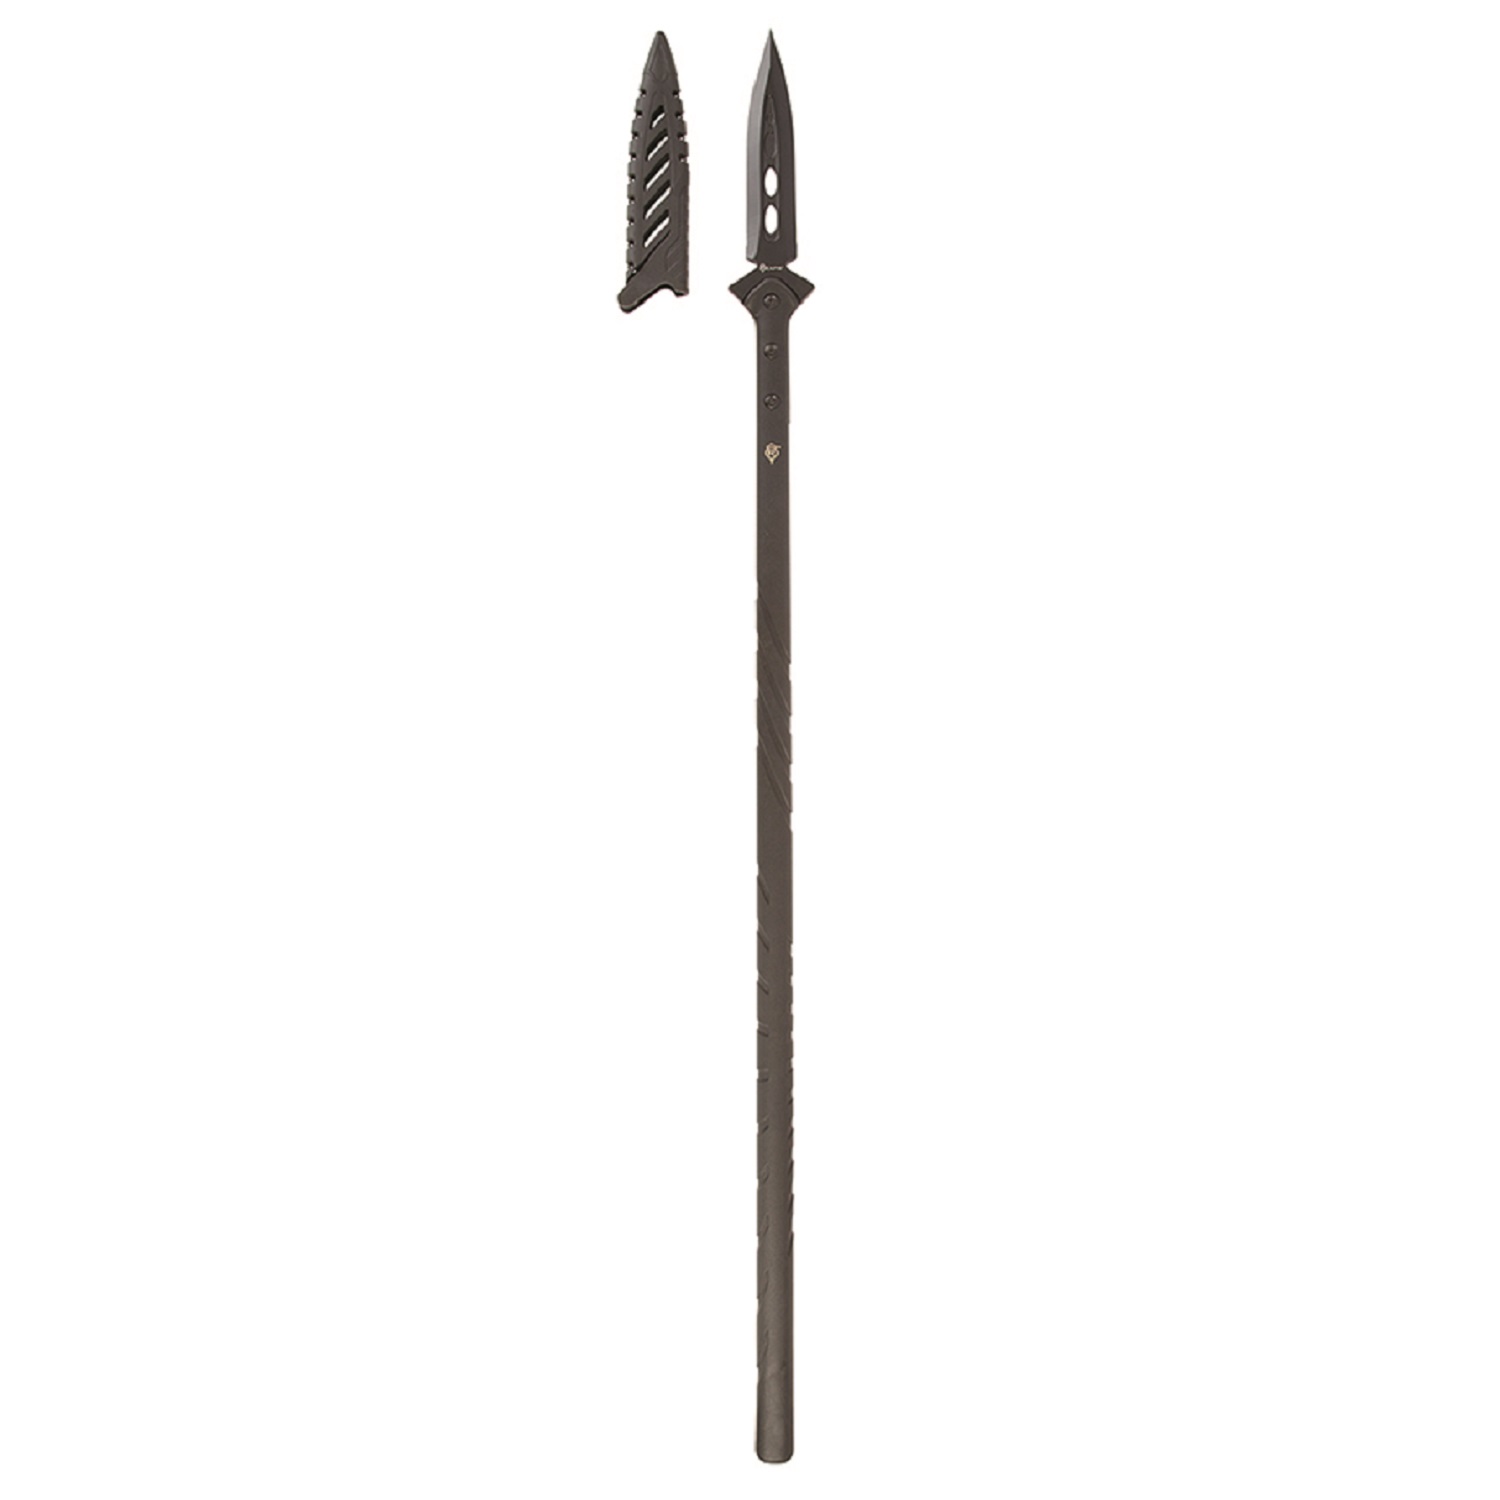 Sheffield Reapr Survival Spear 11003 76812130778 | eBay